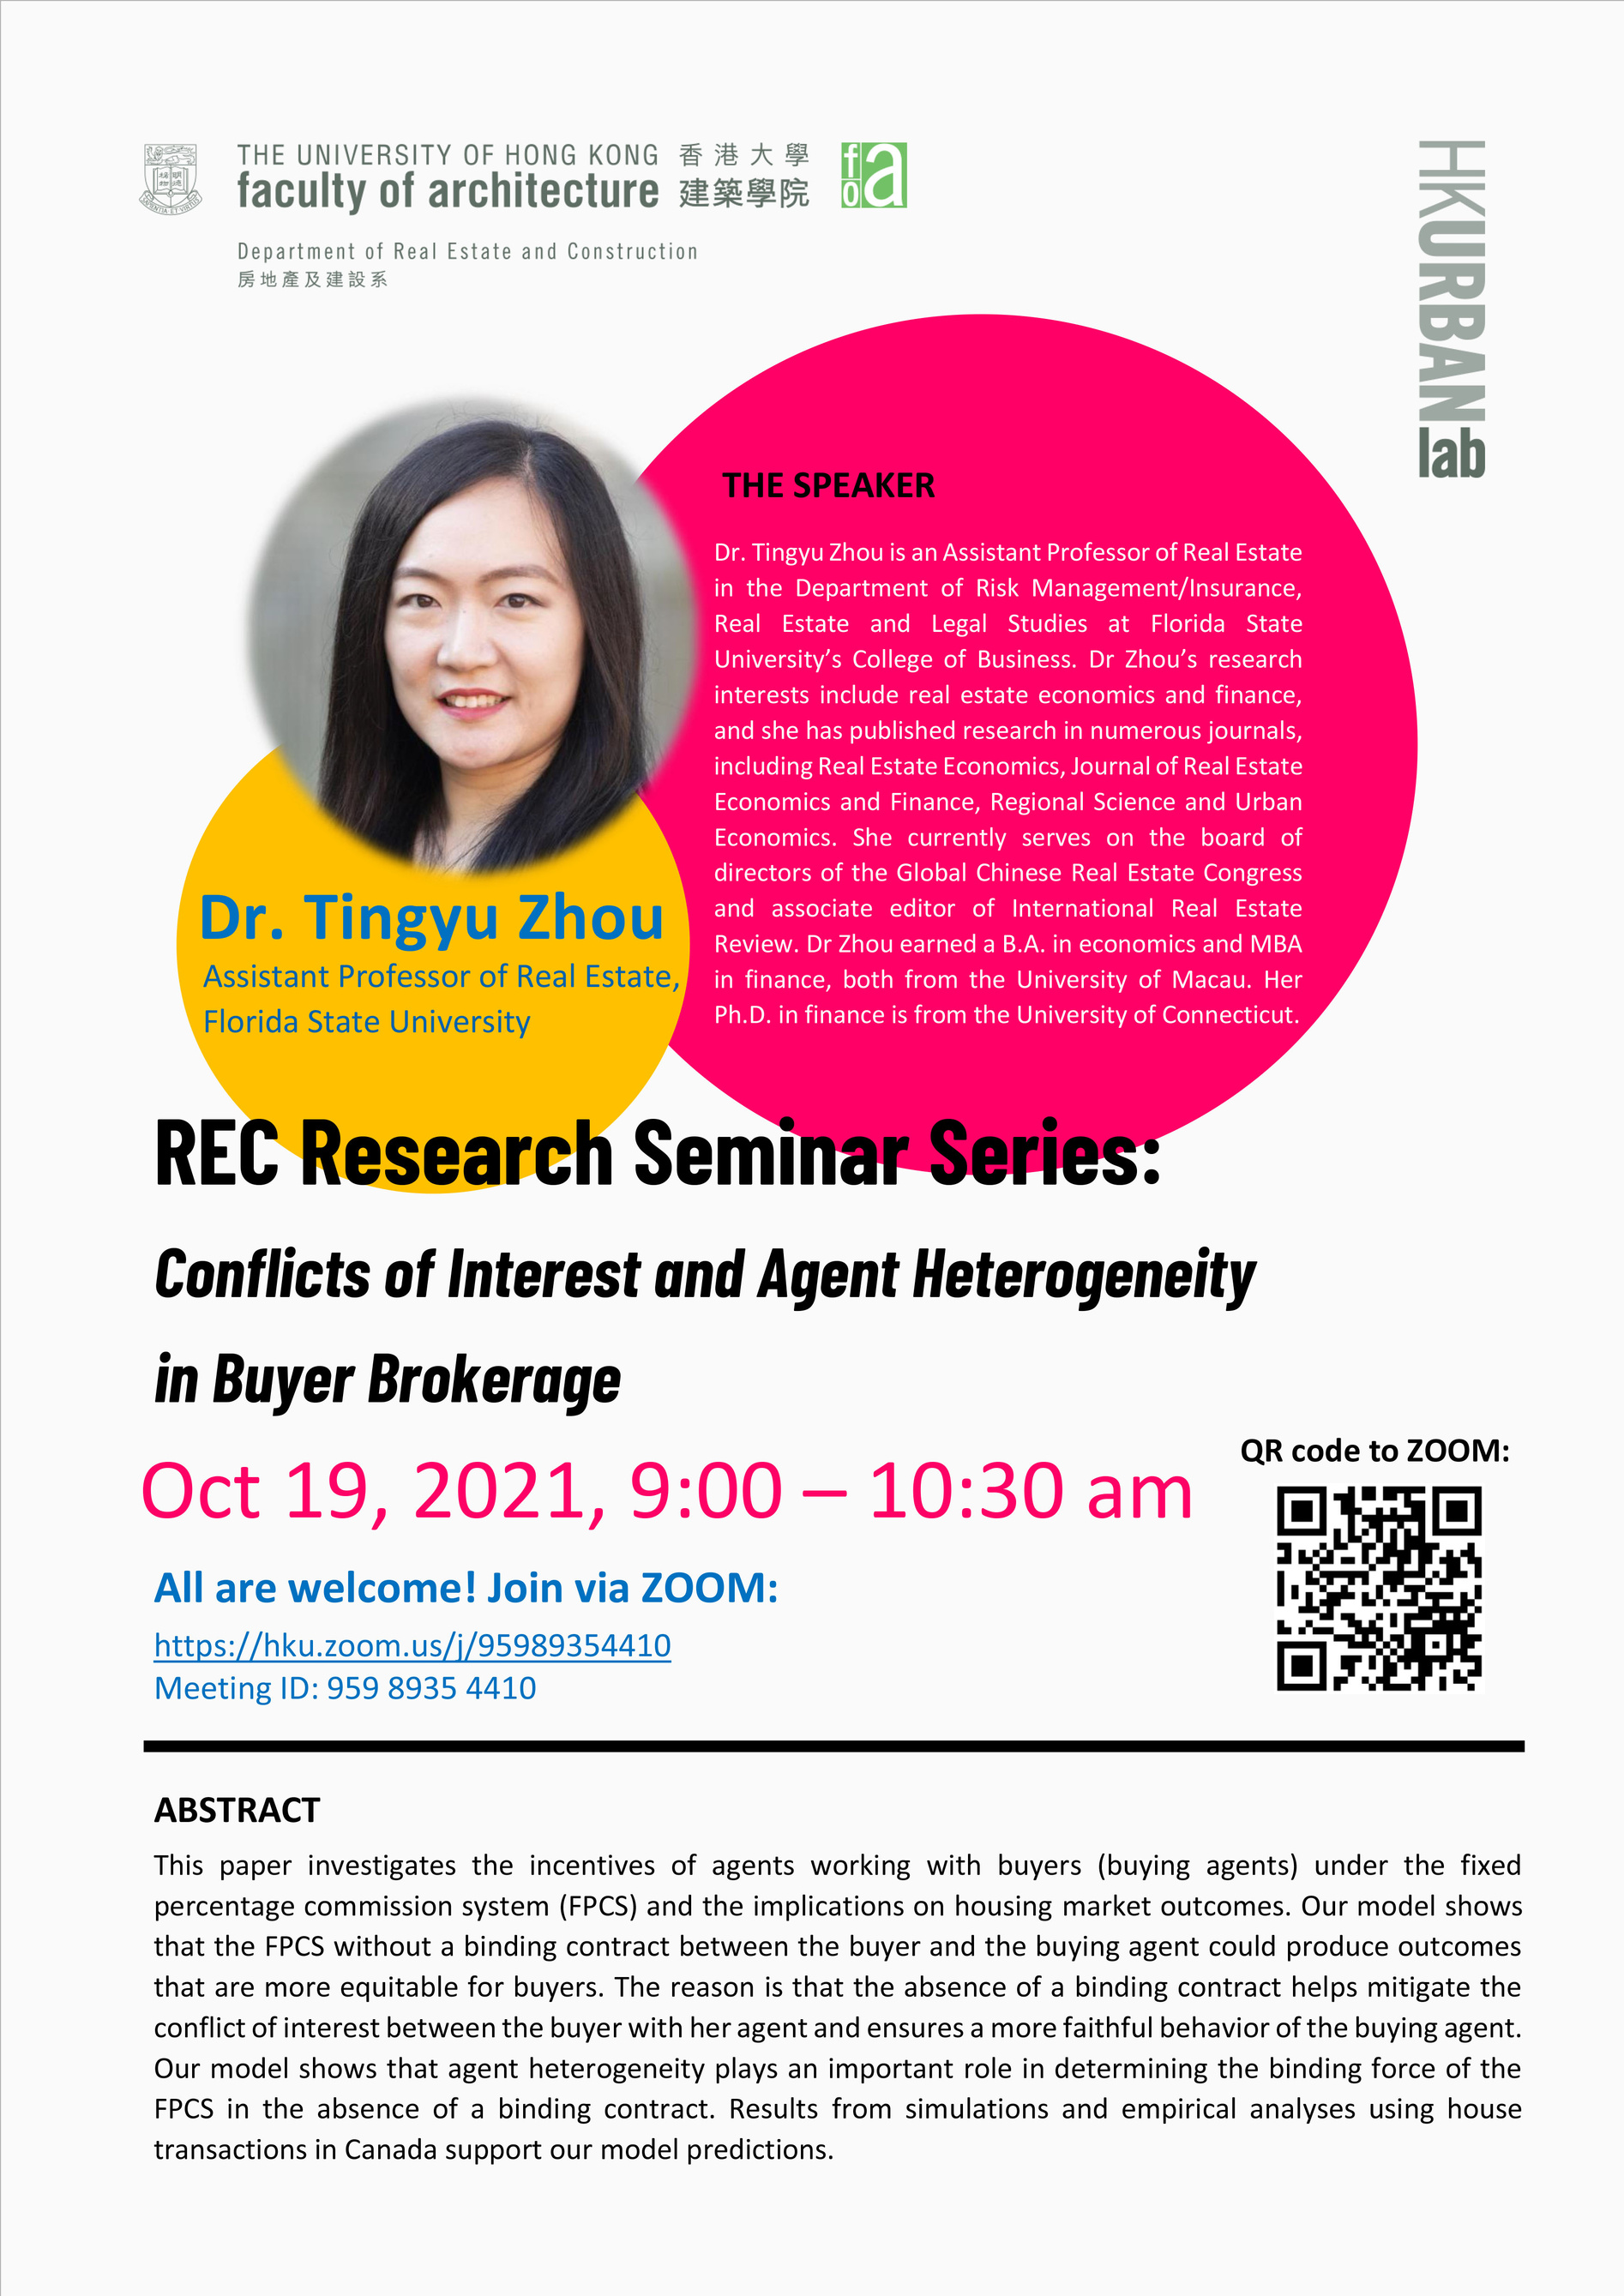 REC Research Seminar Series